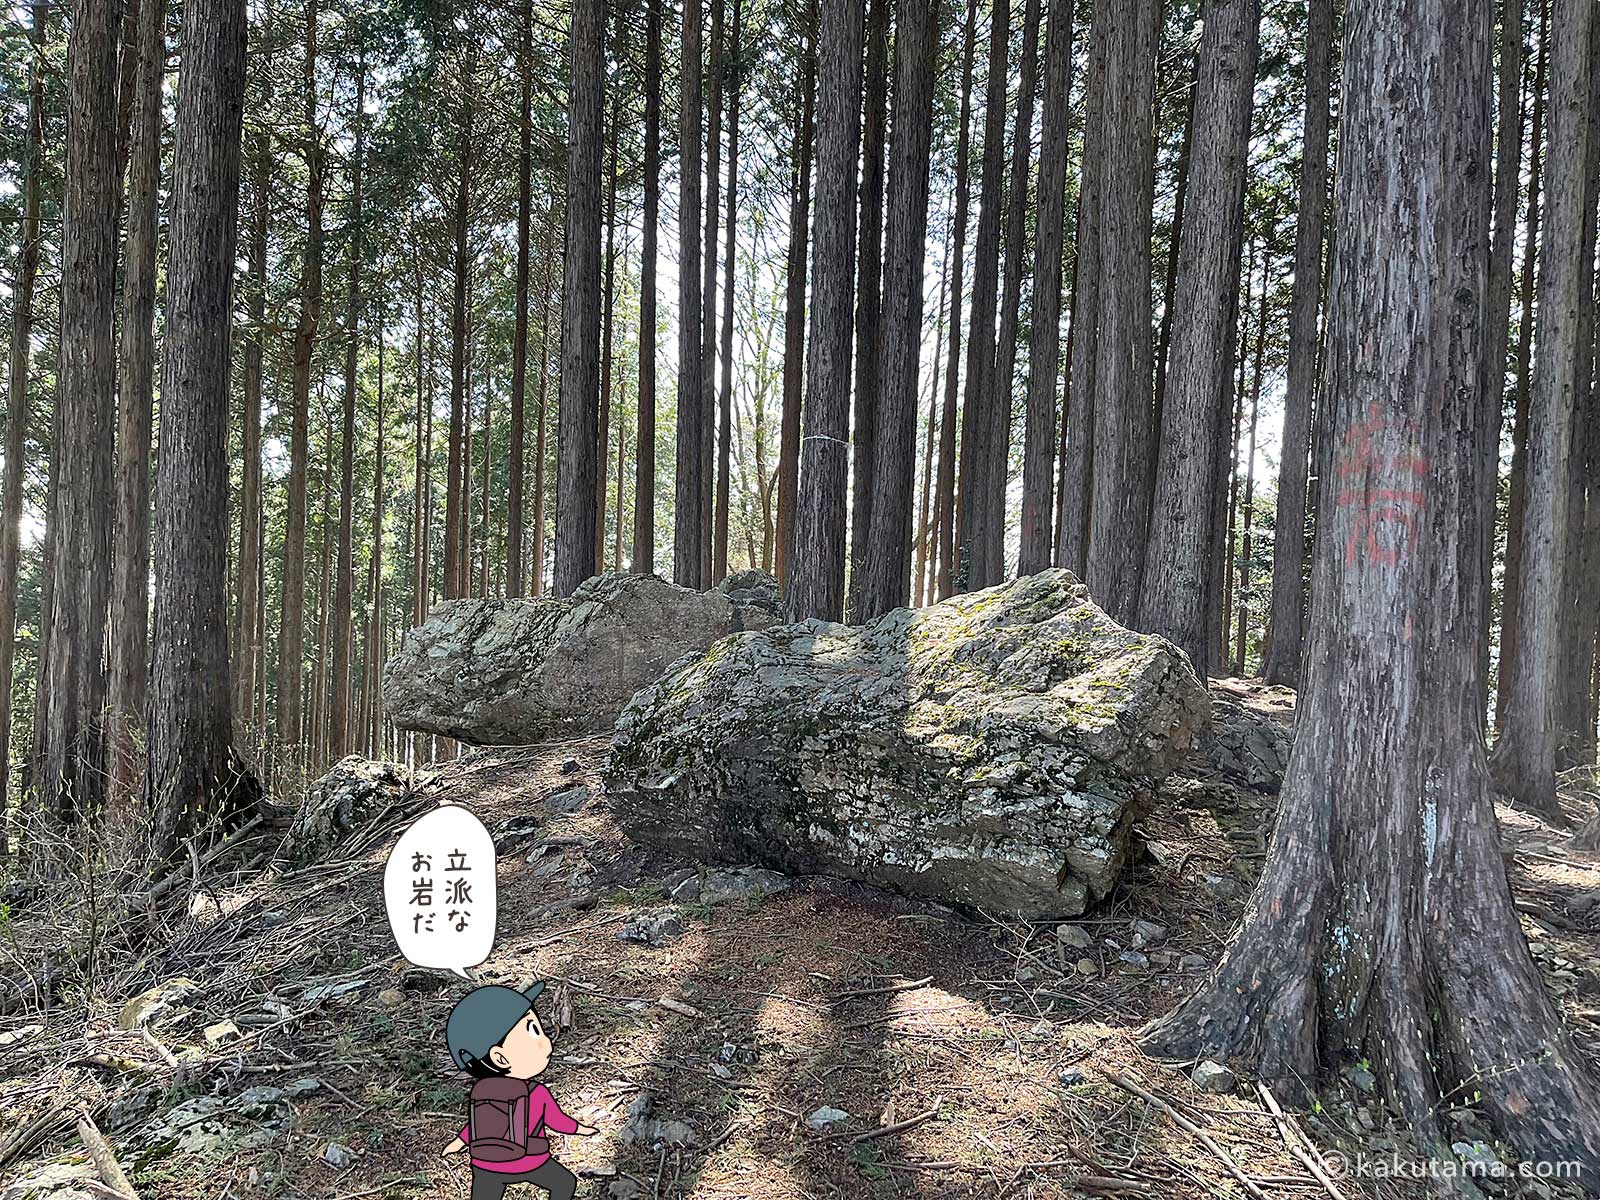 麻生山近くの巨石の写真と登山者のイラスト